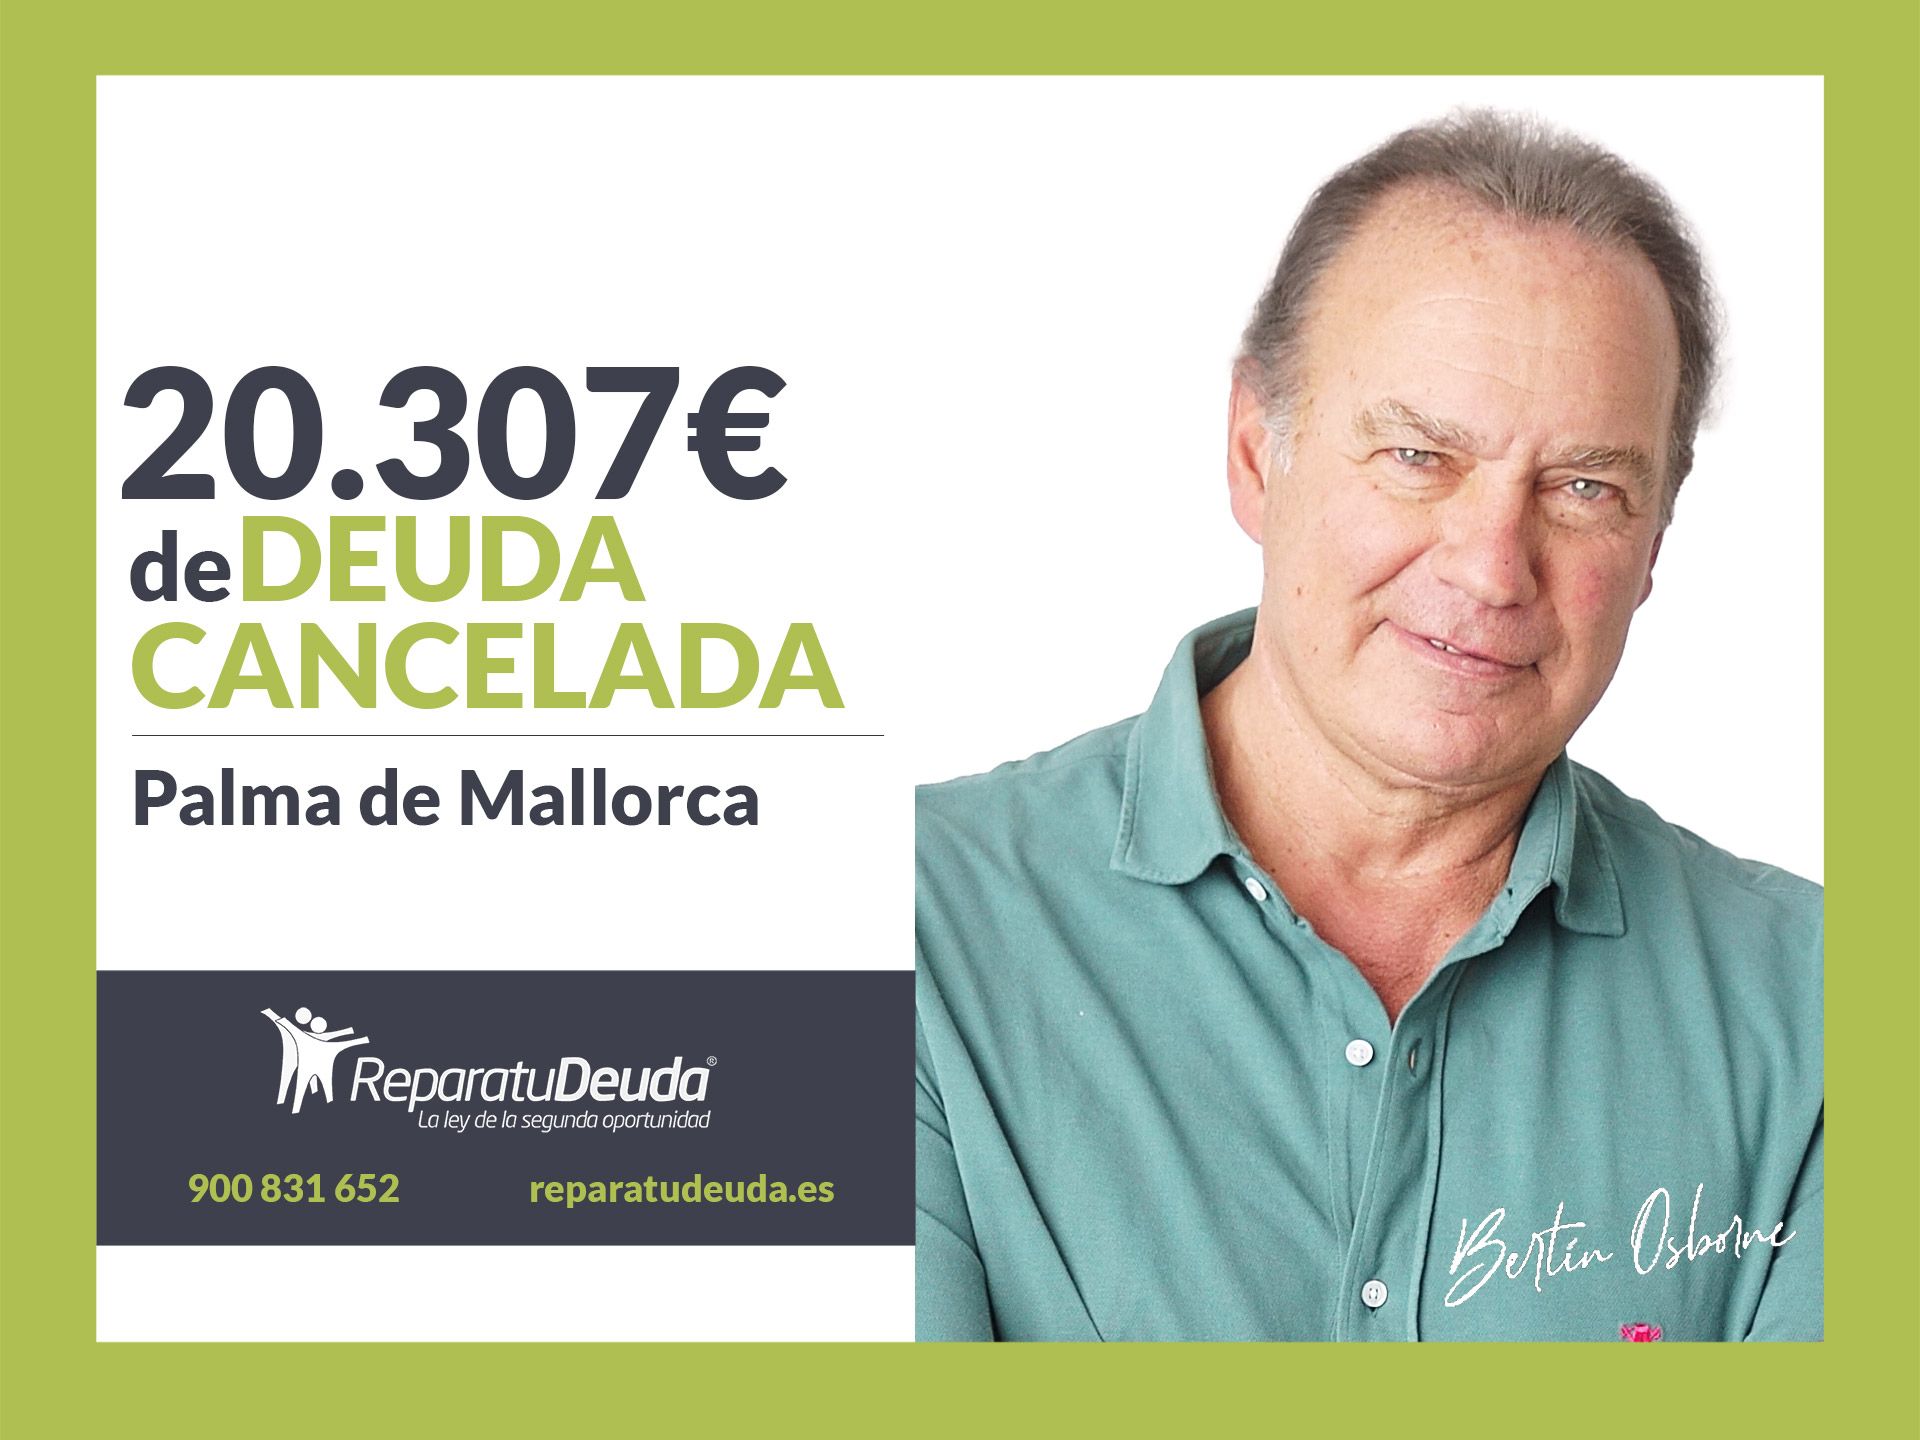 Repara tu Deuda cancela 20.307 ? en Palma de Mallorca (Baleares) con la Ley de Segunda Oportunidad